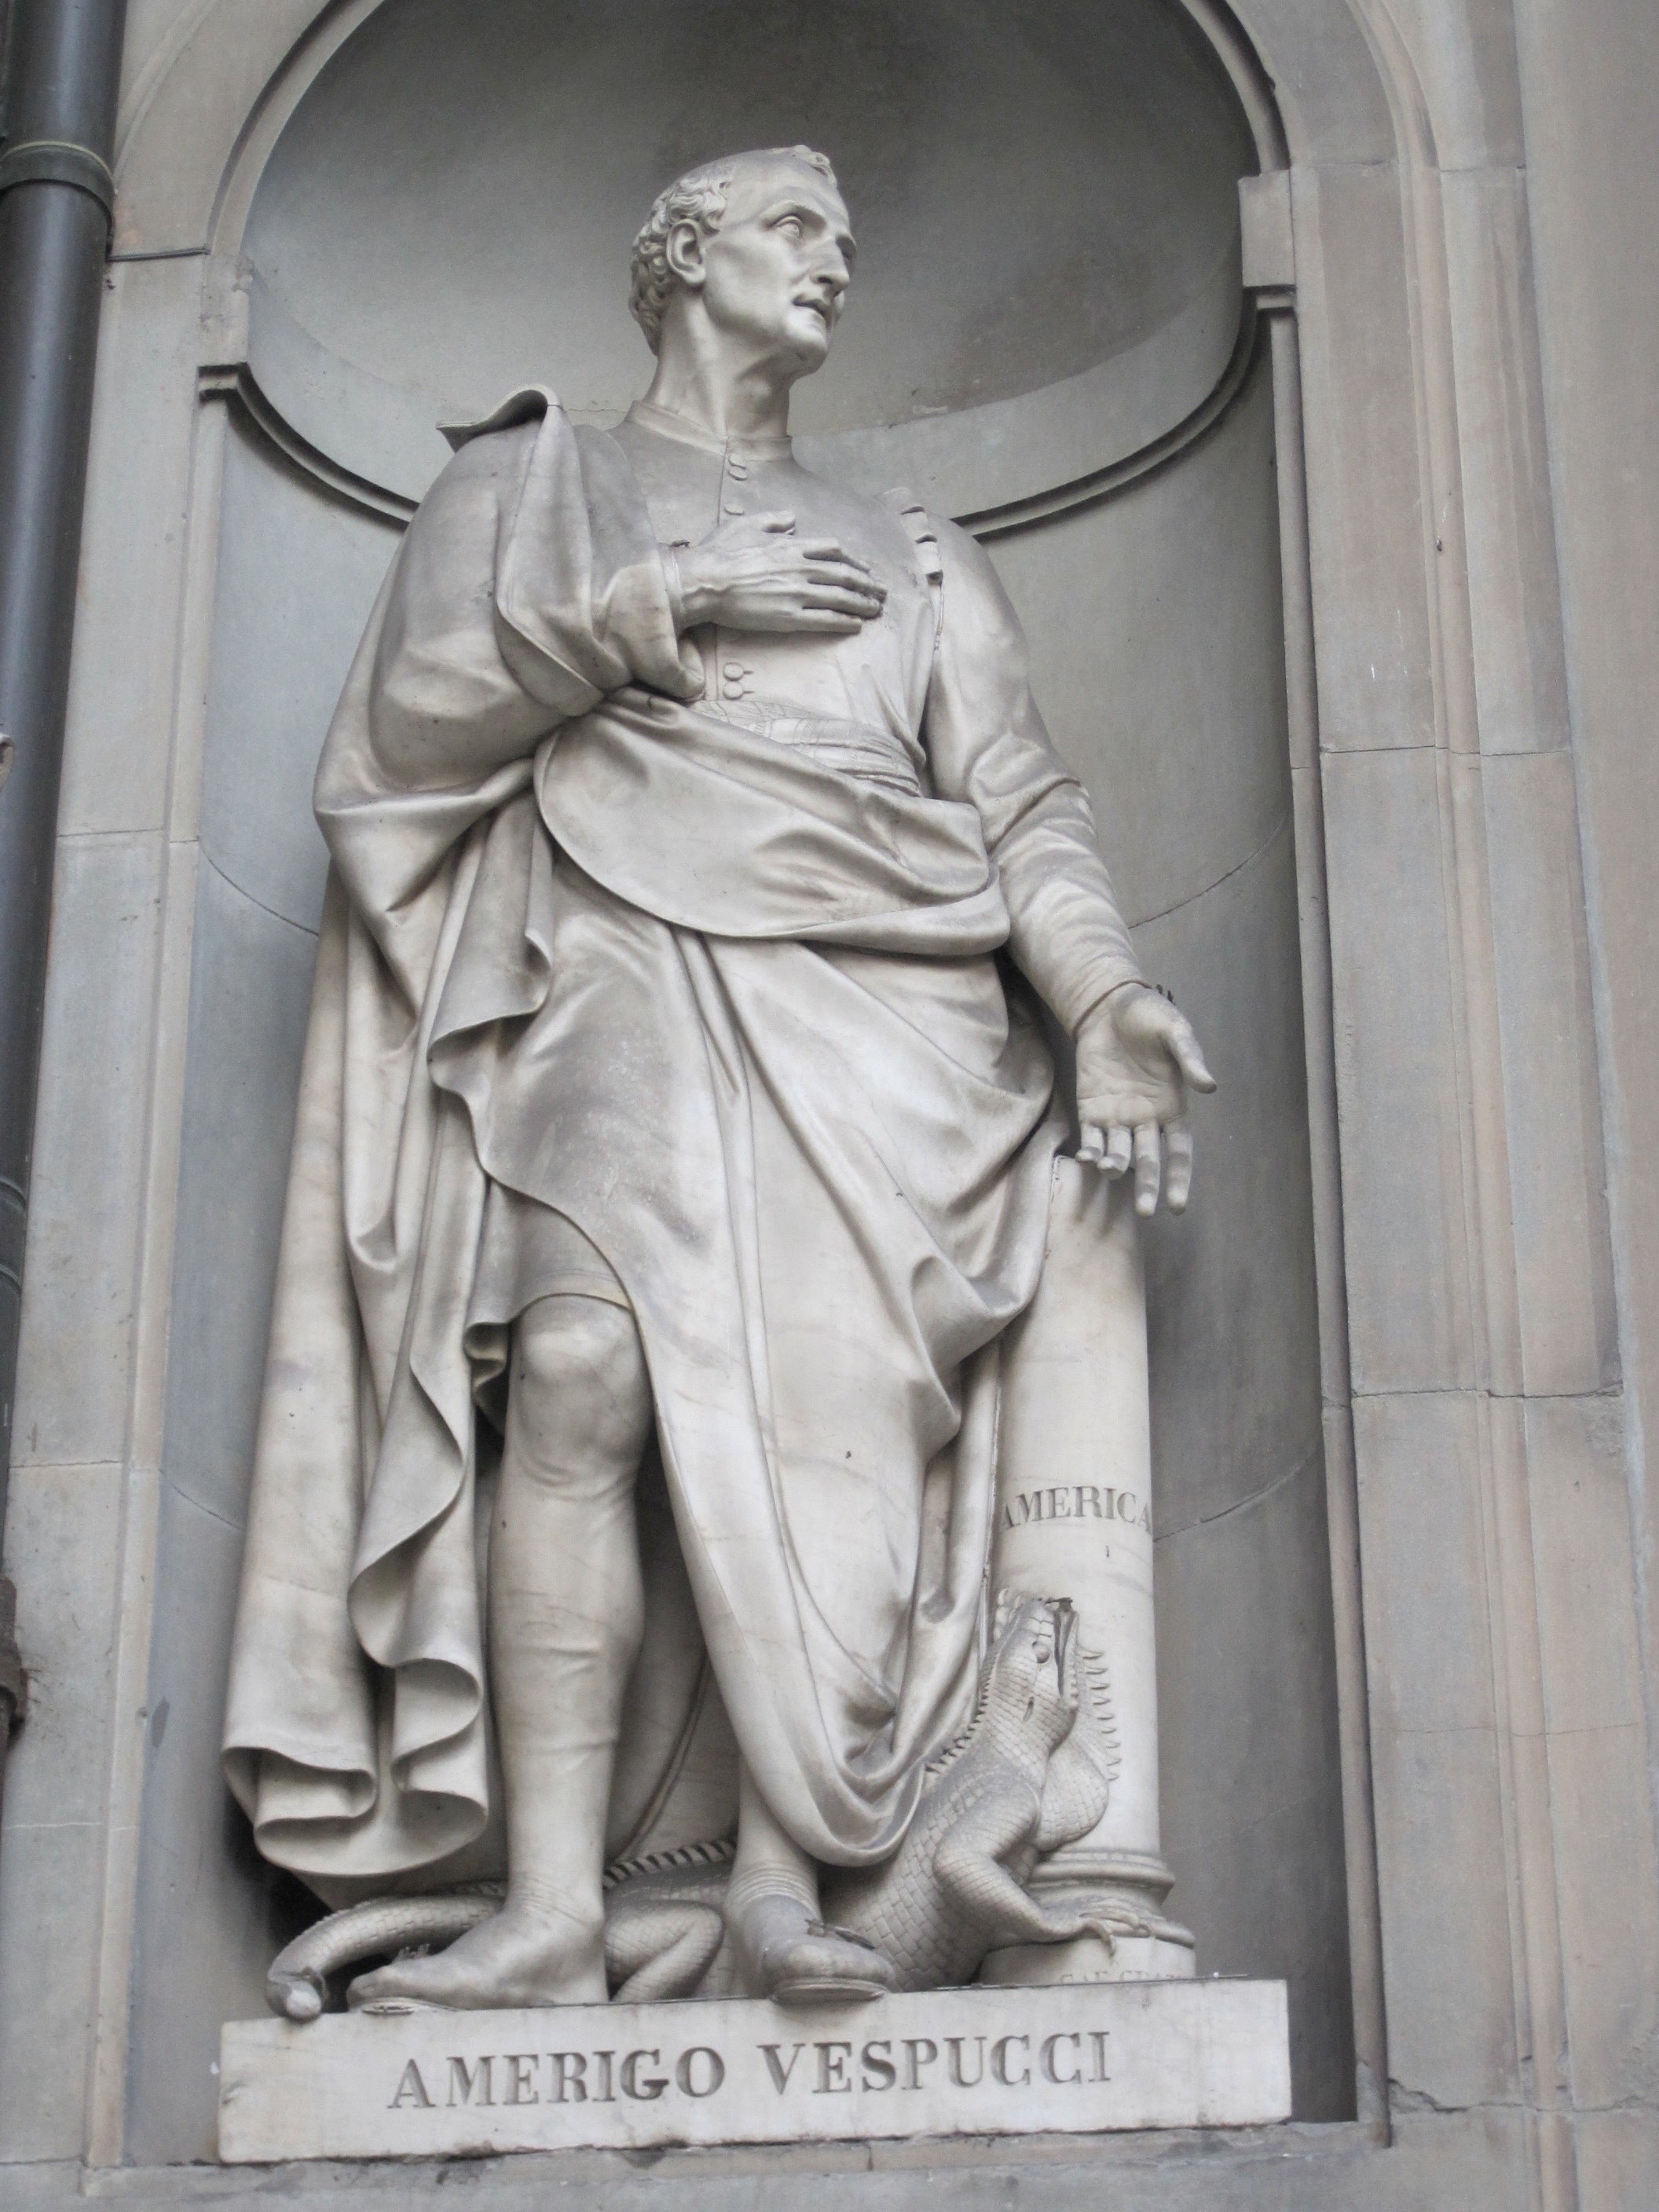 Statue of Amerigo Vespucci near the Uffizi gallery, Florence.